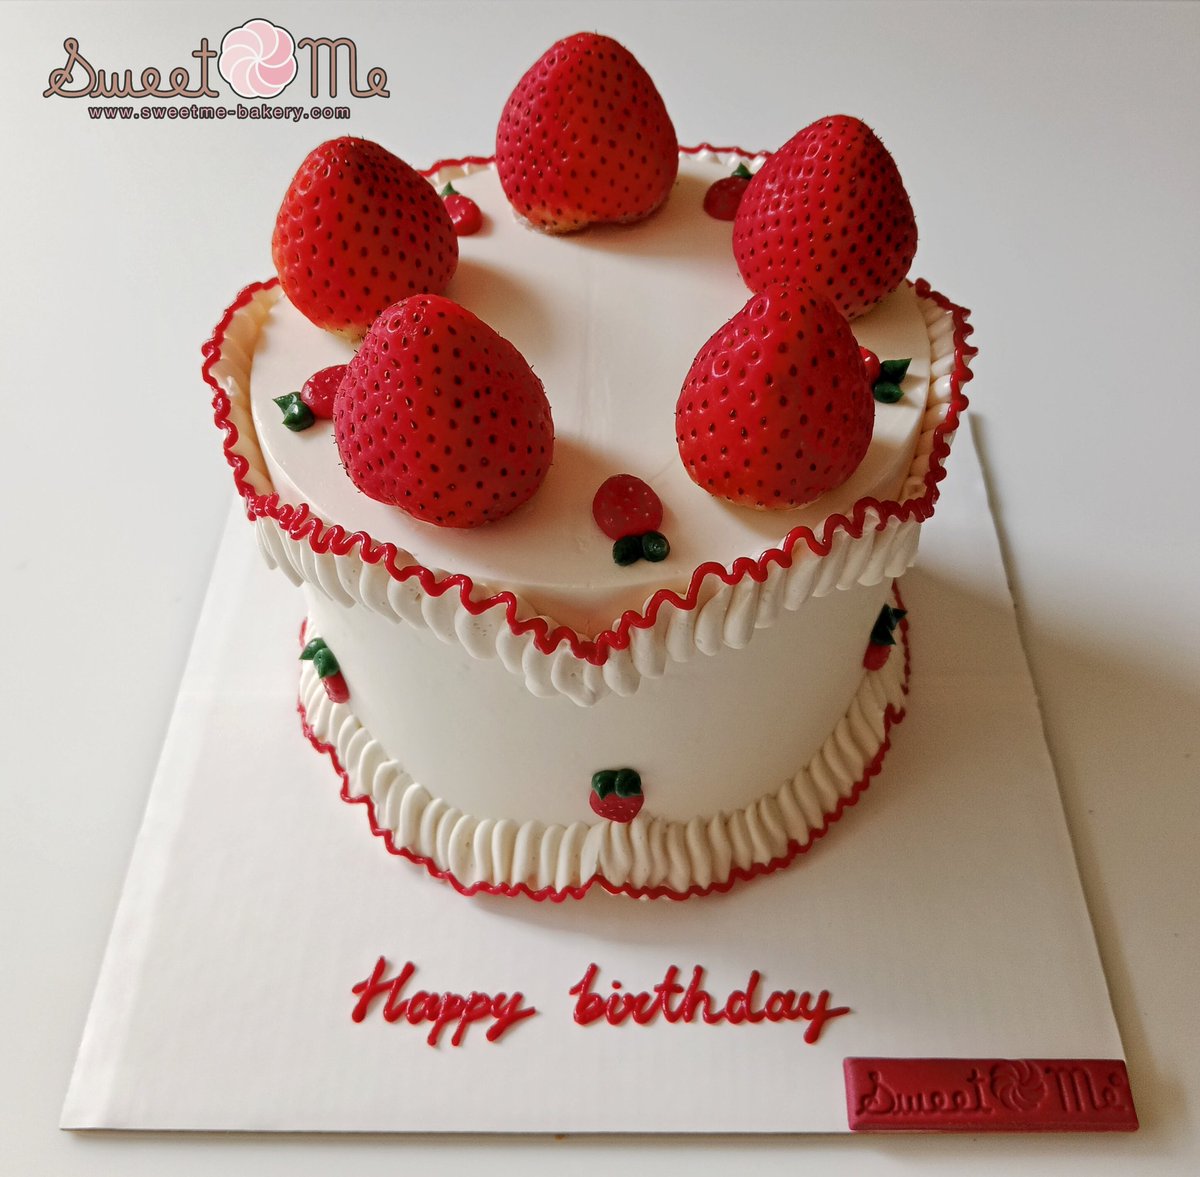 'เค้ก' สตรอเบอรี่ แบบคิ้วท์ ❤️🍓

Line : @SweetMeBakery (มีเครื่องหมาย @ ด้วยนะคะ) 
line.me/ti/p/@sweetmeb…

#sweetmebakery #อร่อยบอกต่อ #birthdaycake #เค้กสตรอเบอรี่ #strawberrycake #strawberry #อร่อยไปแดก